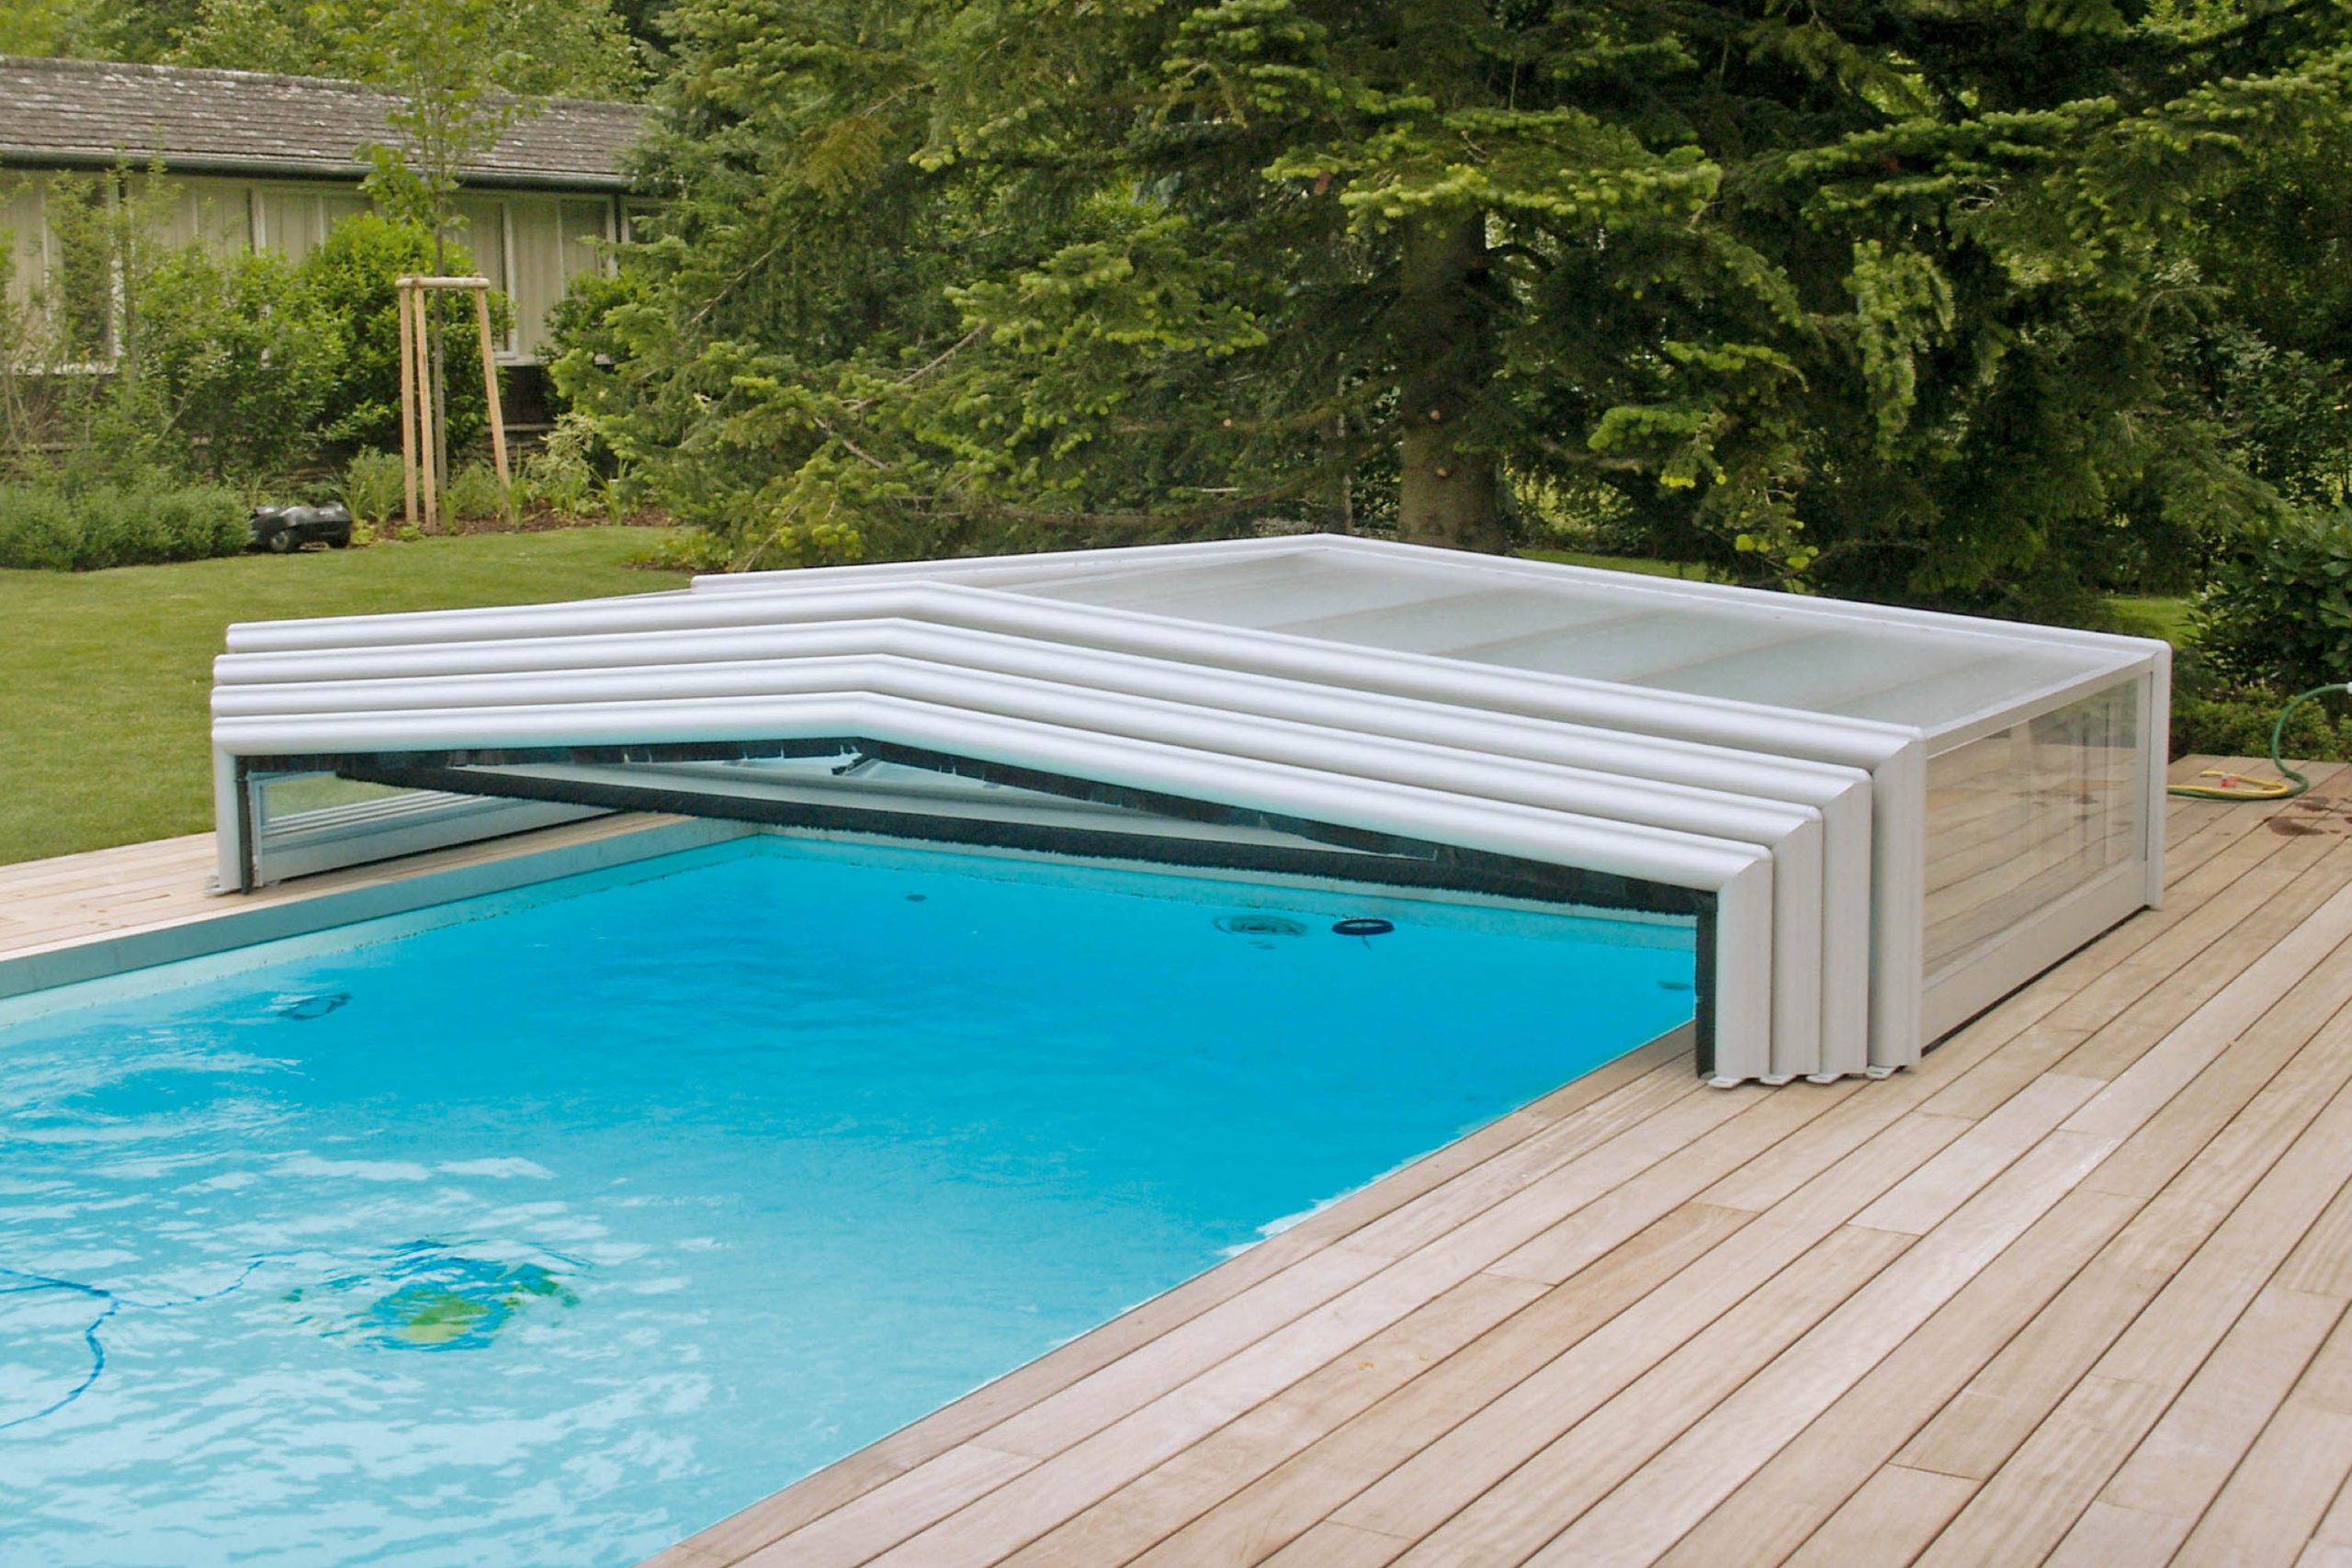 L’abris de piscine bas, 3 angles. grâce à sa faible hauteur et sécurité, l’abri bas permet de conserver la perspective du jardin tout en assurant le chauffage naturel de la piscine.